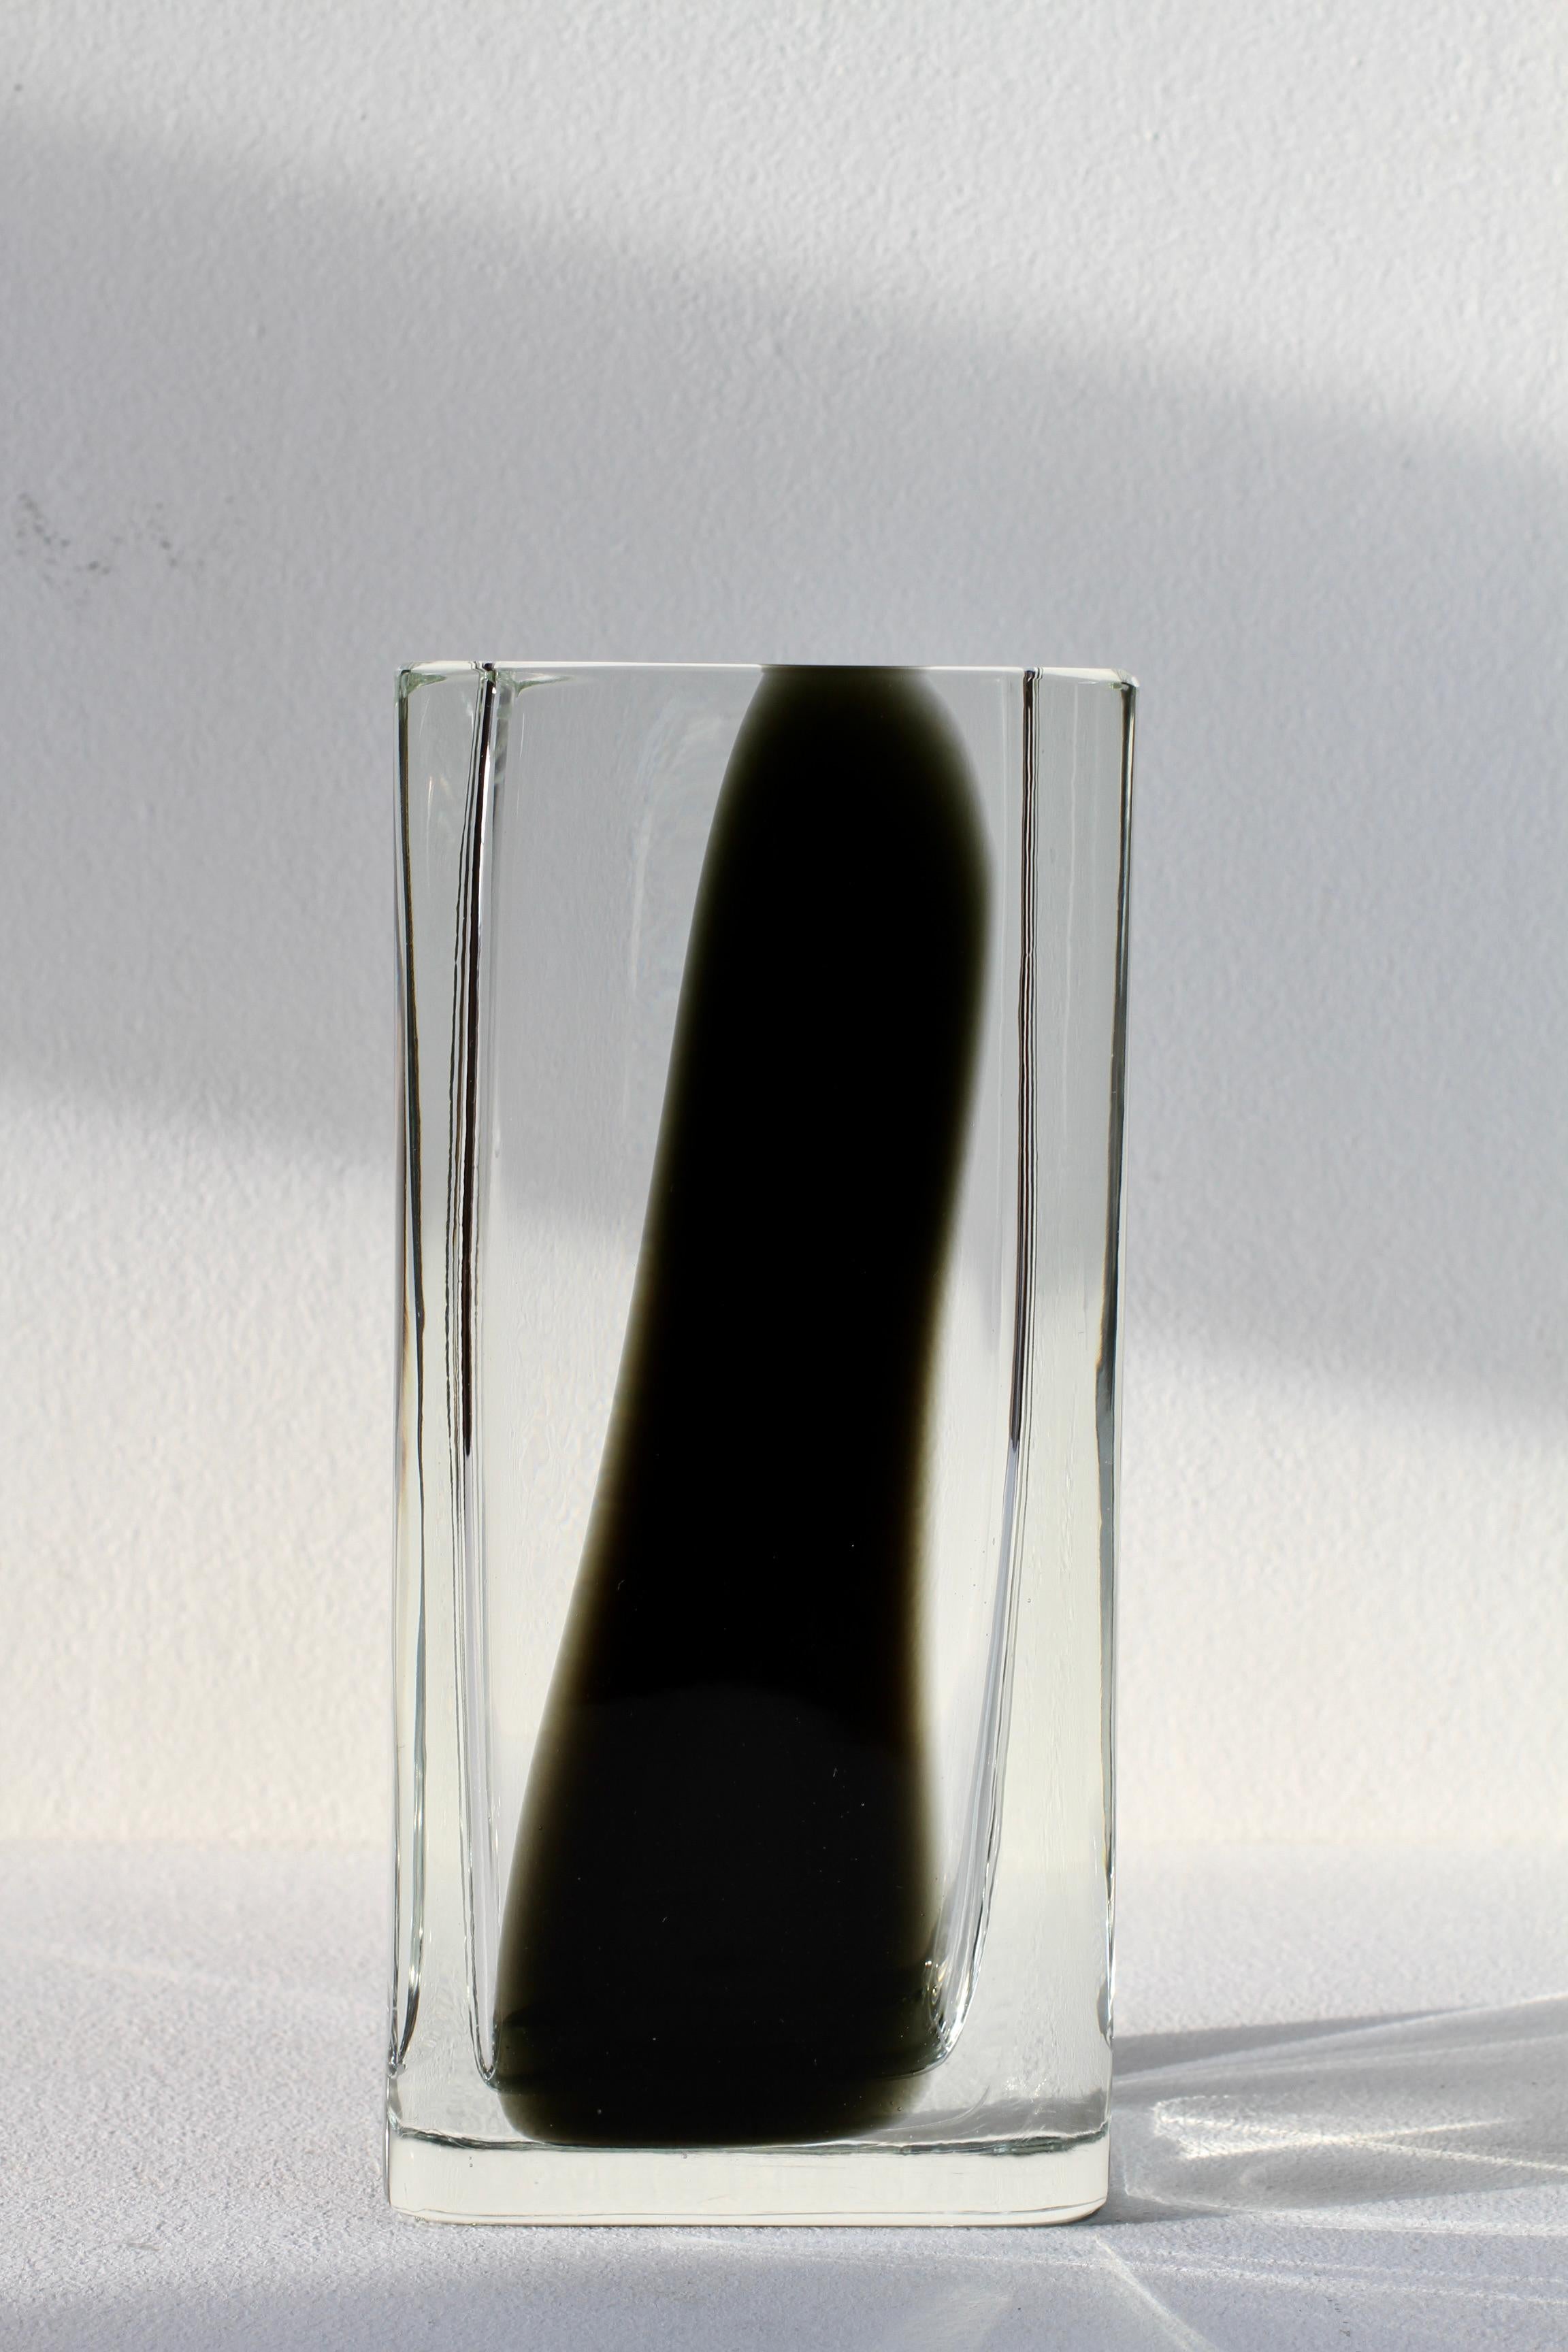 Antonio da Ros pour Cenedese grand, lourd et élégant vase en verre italien de Murano de style moderne du milieu du siècle, haut, grand et carré, vers 1965-1975. Cette pièce de verre rare, grande et lourde présente une forme et un design simplistes